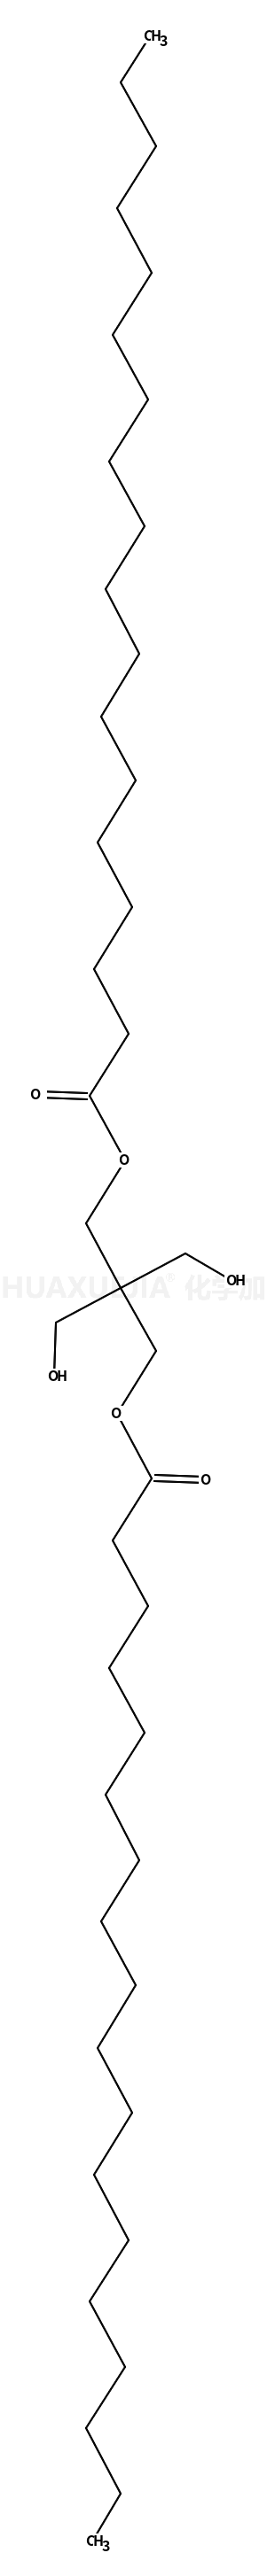 季戊四醇二硬脂酸酯